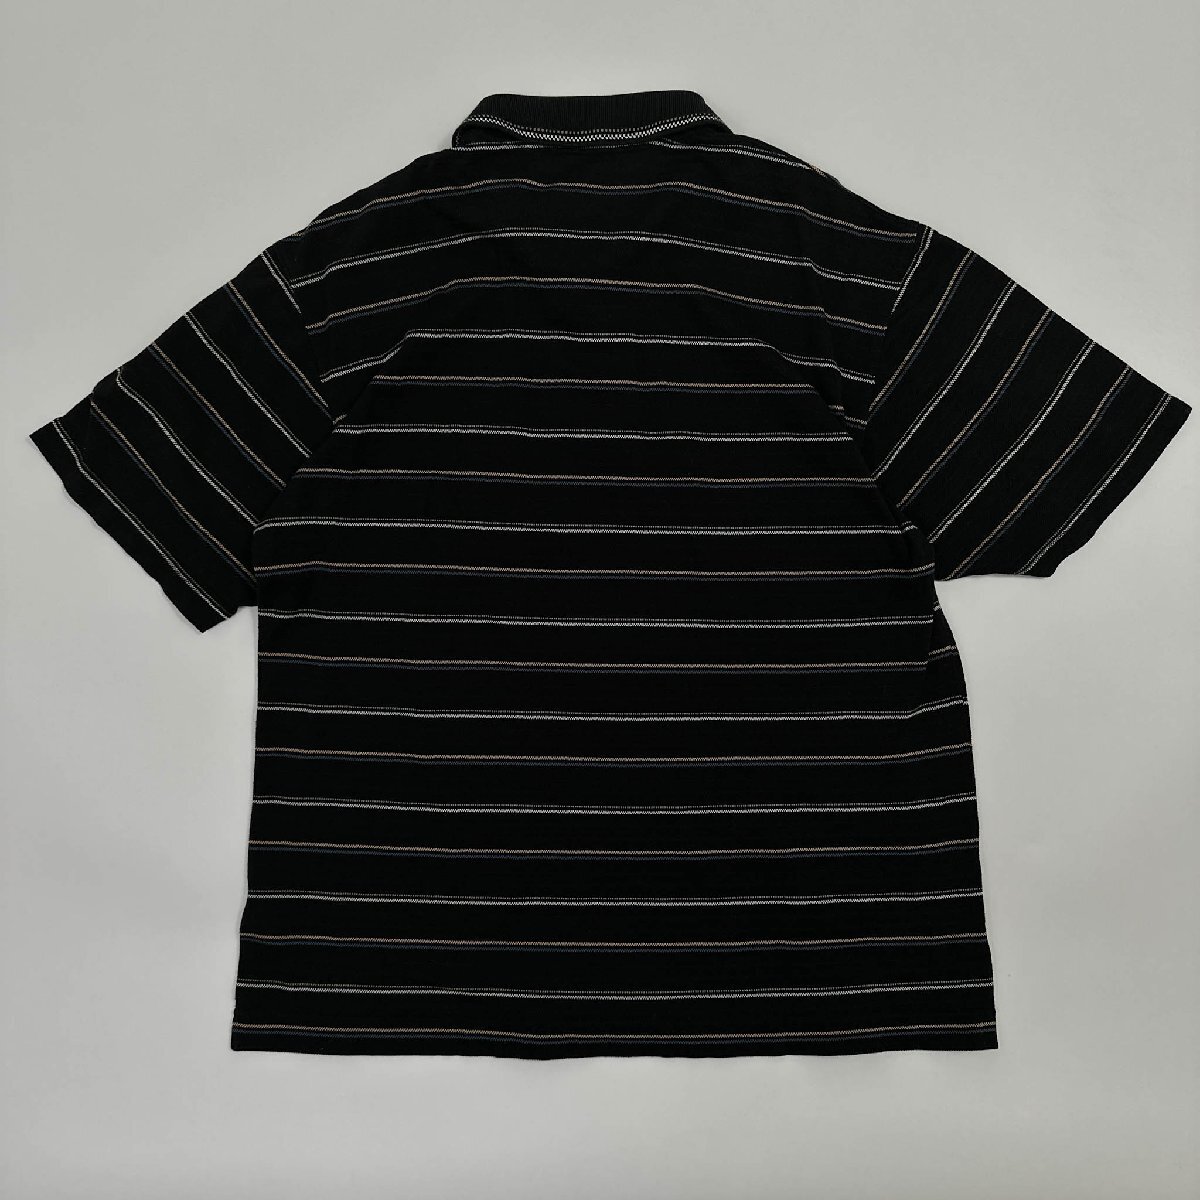 オシャレ!!◆ARAMIS アラミス ロゴ刺繍 ボーダー柄 半袖 ポロシャツ サイズ M /メンズ 黒 ブラック 日本製の画像6